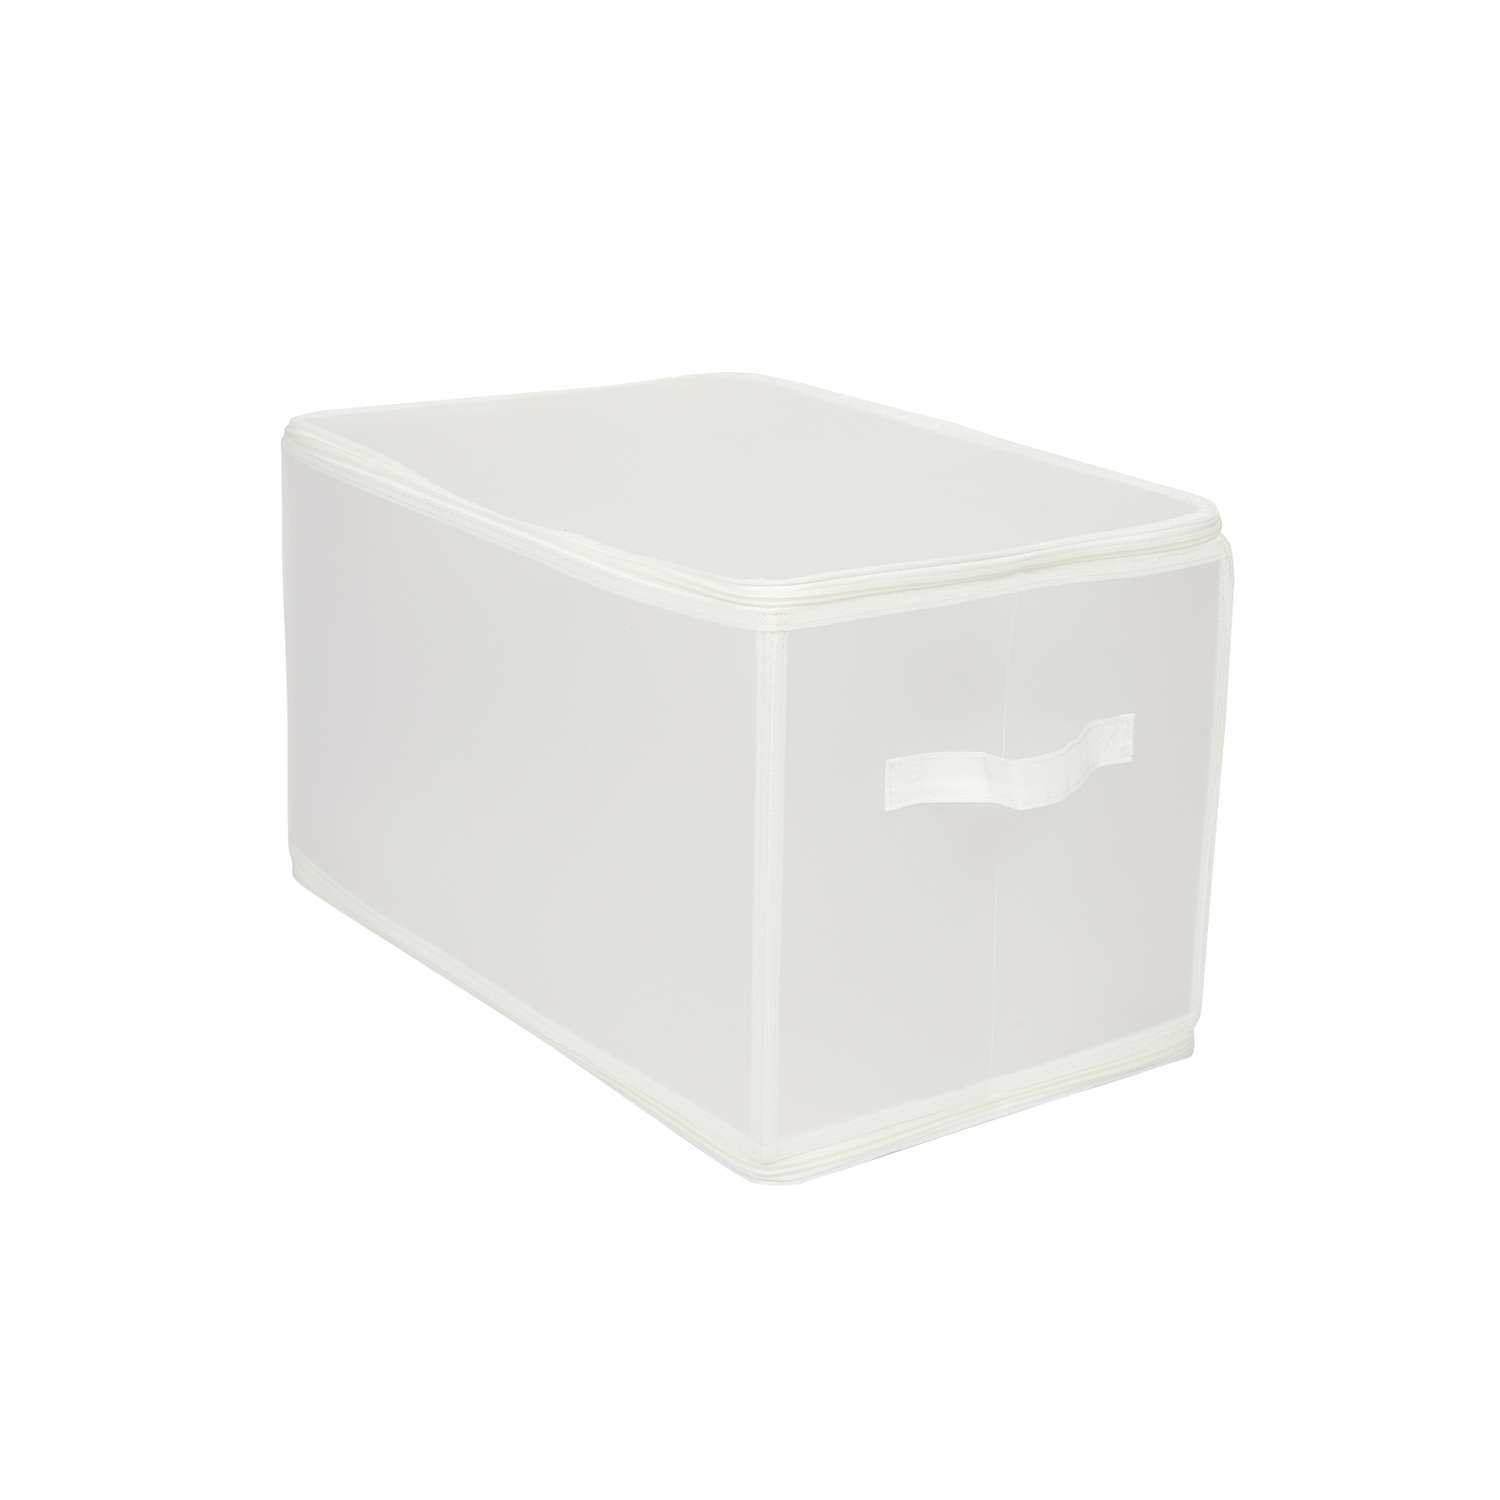 Короб для хранения ЕВРОГАРАНТ серии Zip-box полипропилен 52х30х30 см - фото 8